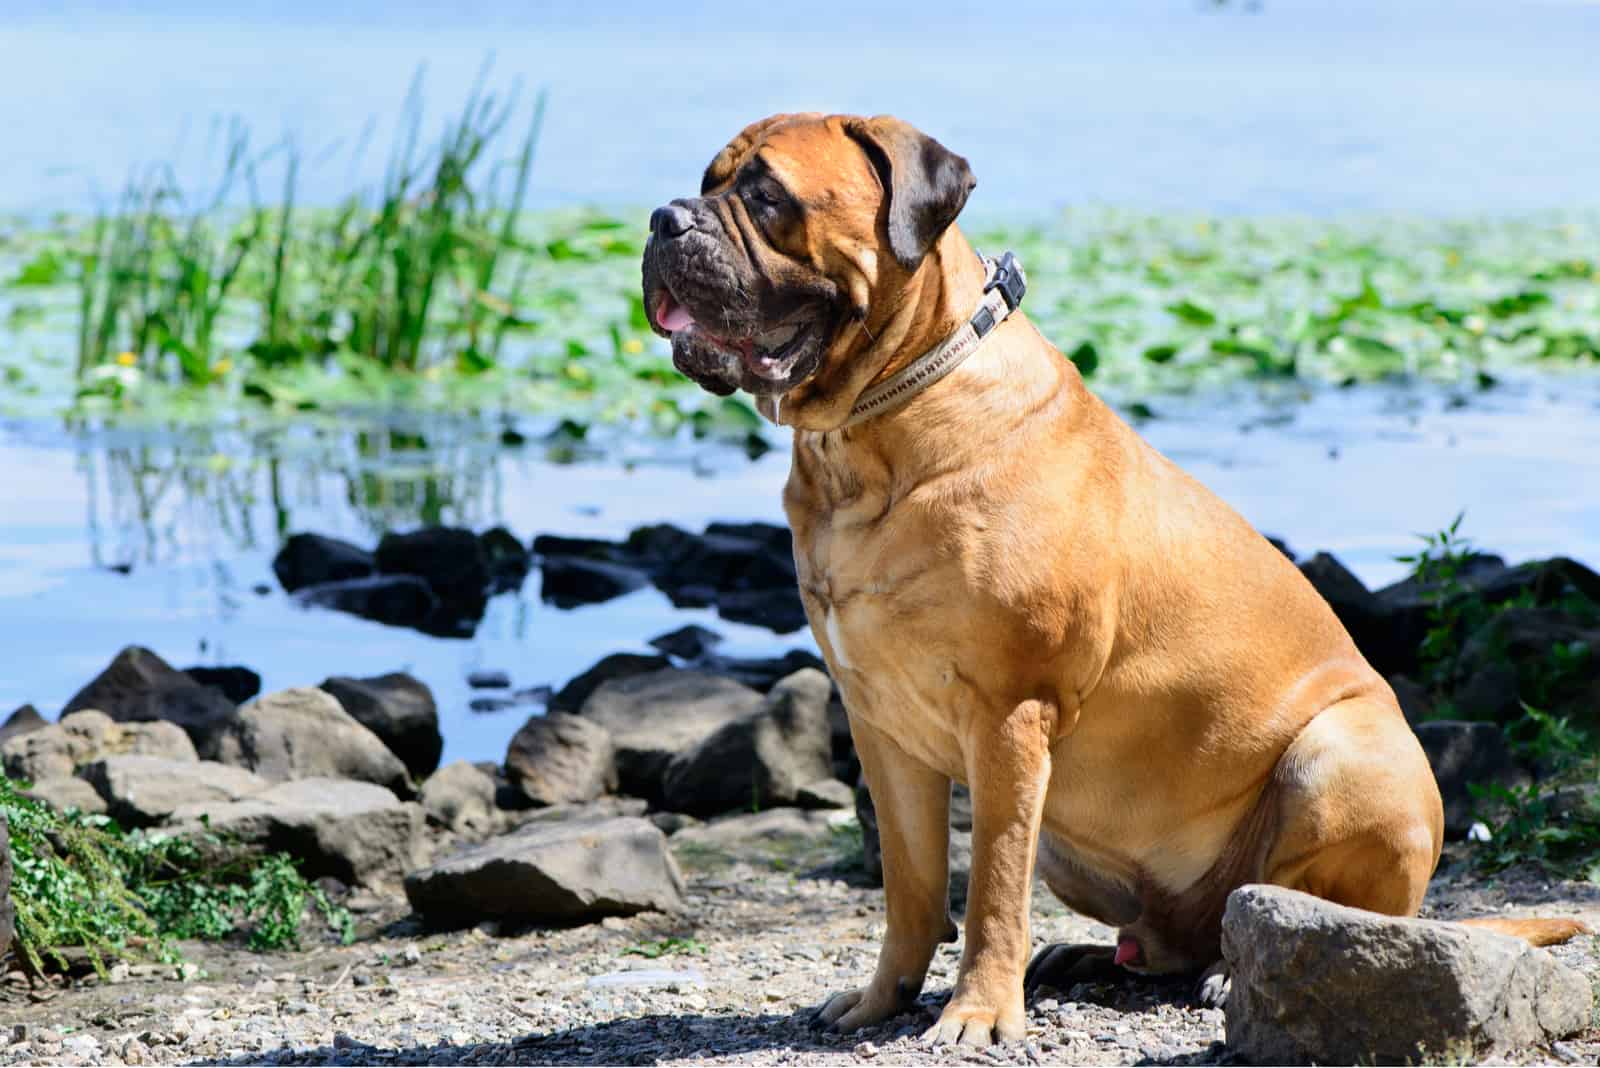 Pet bullmastiff dog sitting near the river